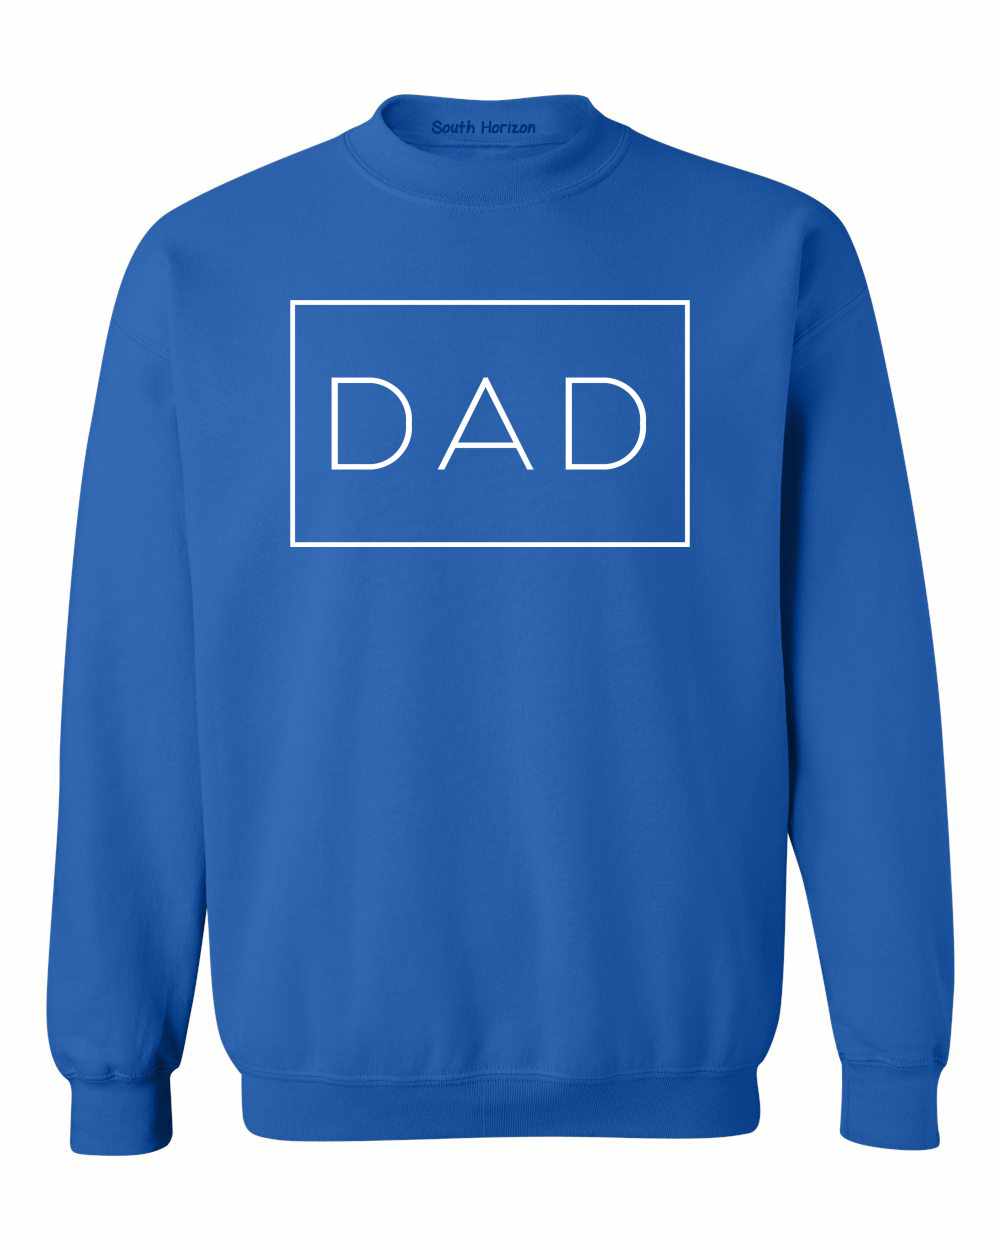 DAD - Daddy - Box on SweatShirt (#1257-11)